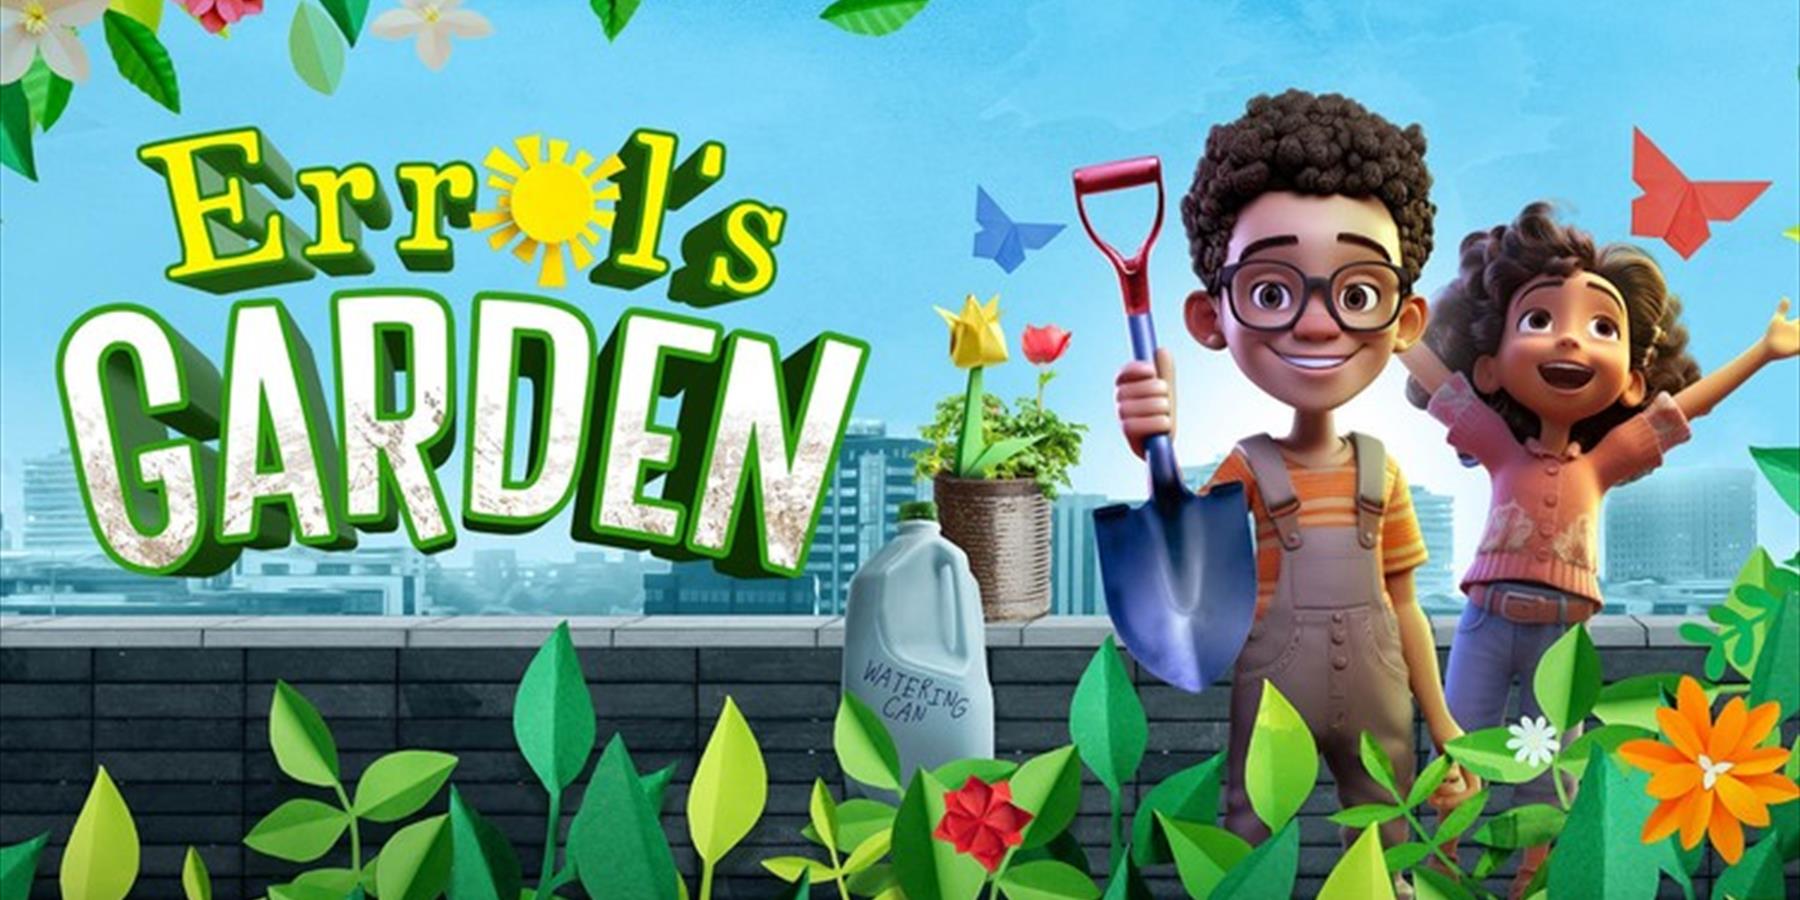 Golden Toad Theatre presents Errol's Garden